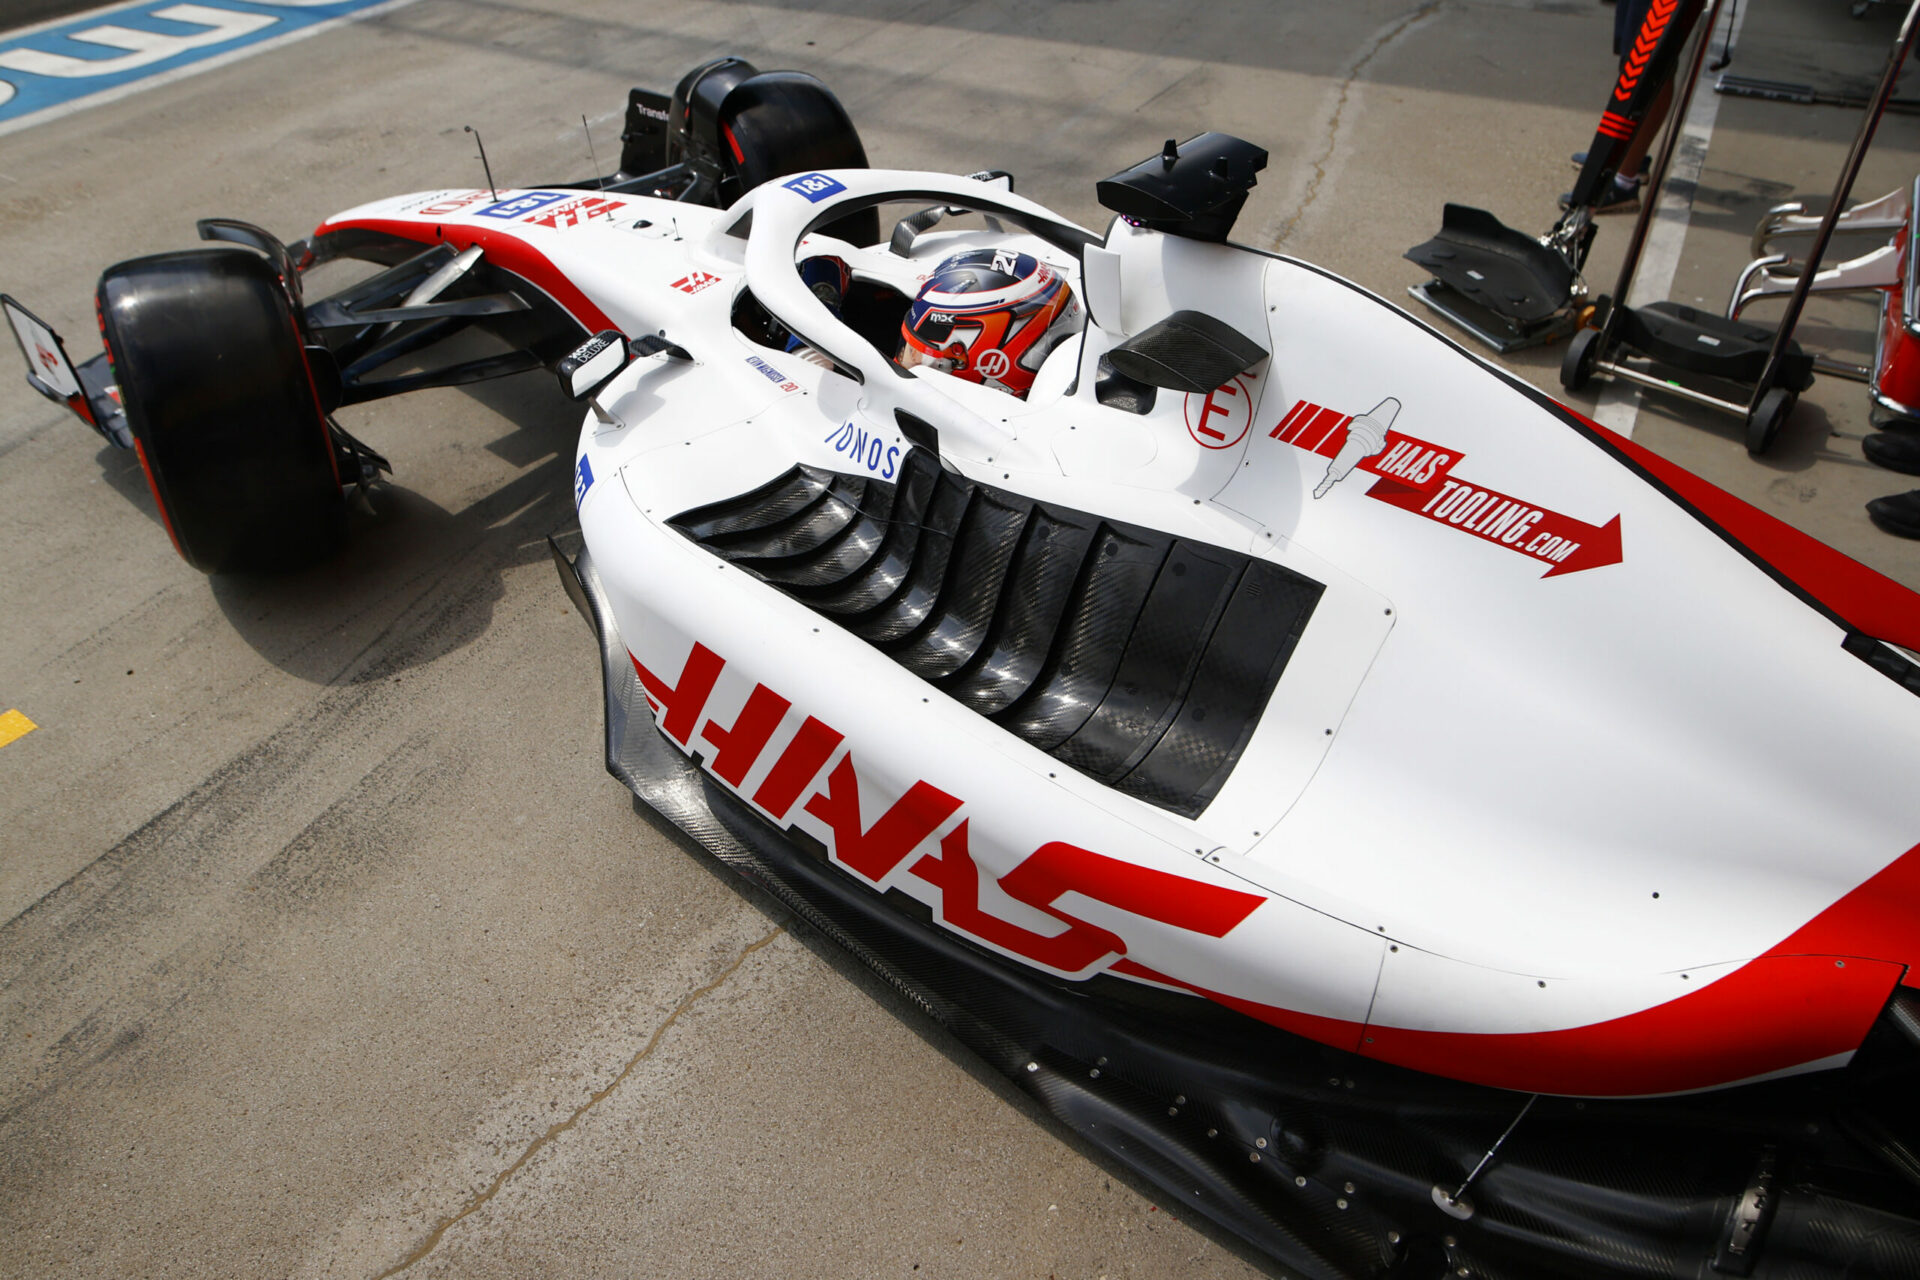 L’équipe Haas assume totalement d’avoir copié le concept Ferrari